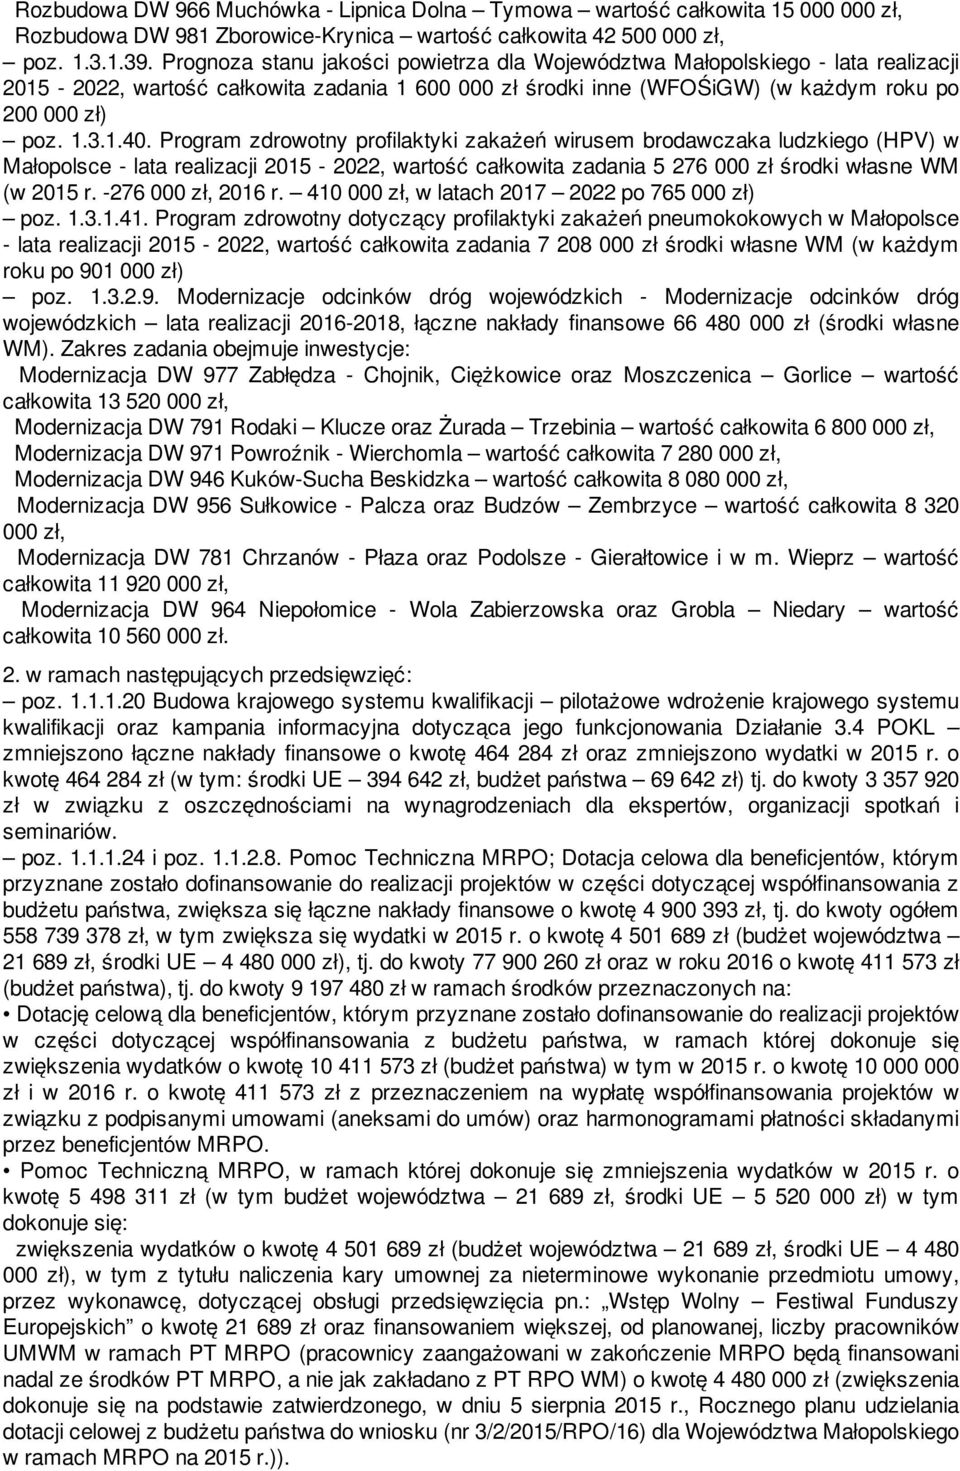 Program zdrowotny profilaktyki zakażeń wirusem brodawczaka ludzkiego (HPV) w Małopolsce - lata realizacji 2015-2022, wartość całkowita zadania 5 276 000 zł środki własne WM (w 2015 r.